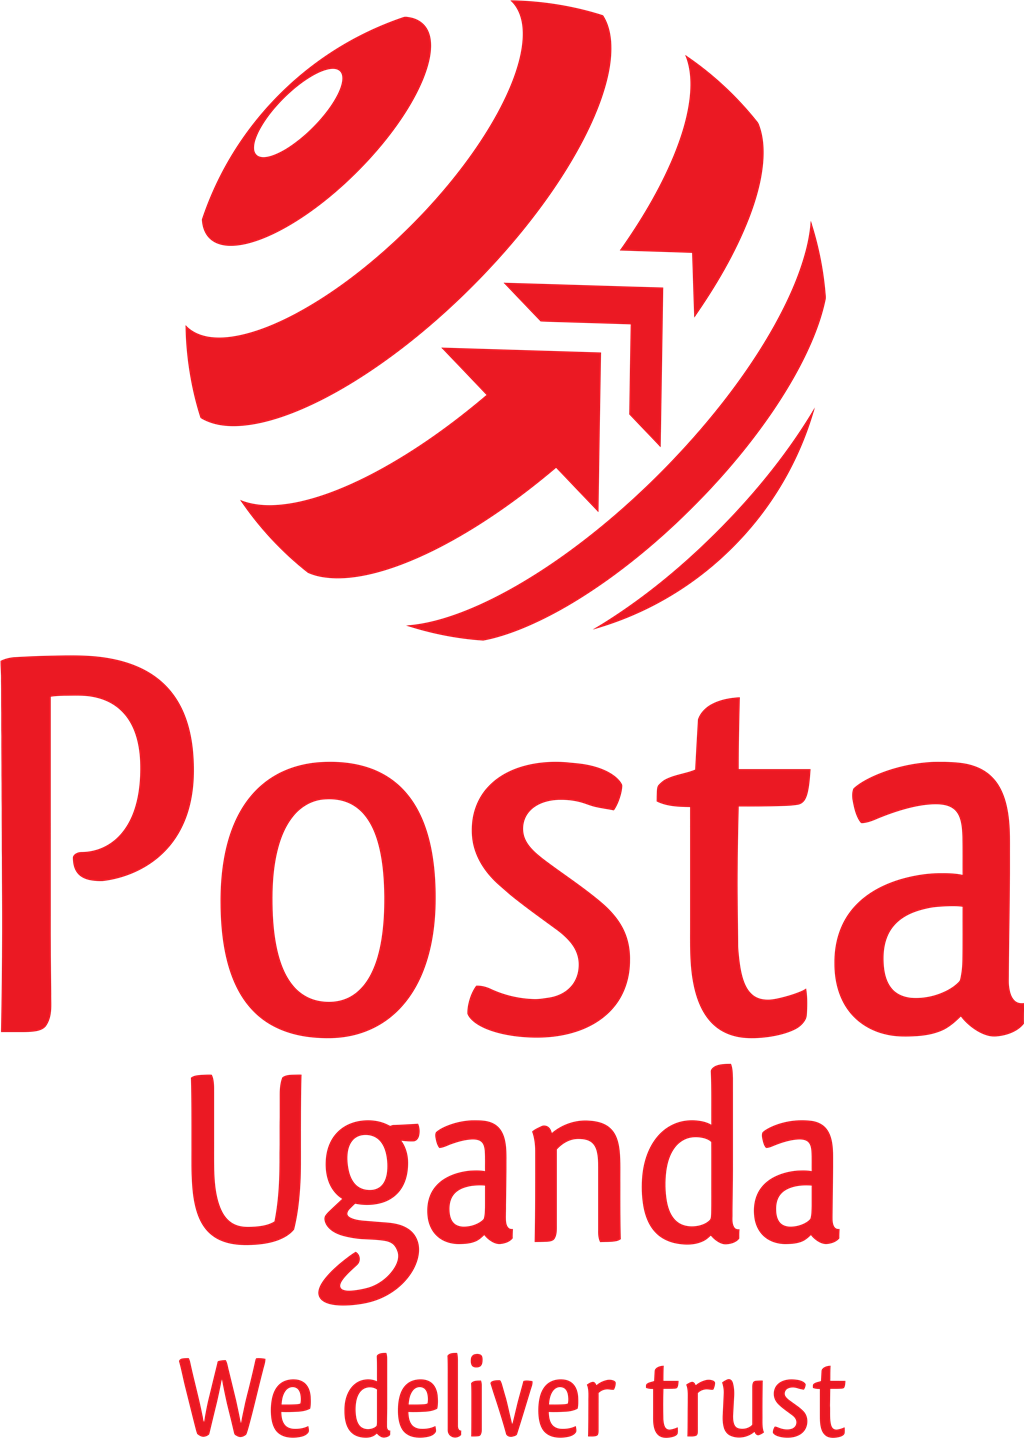 Posta Uganda logotype, transparent .png, medium, large